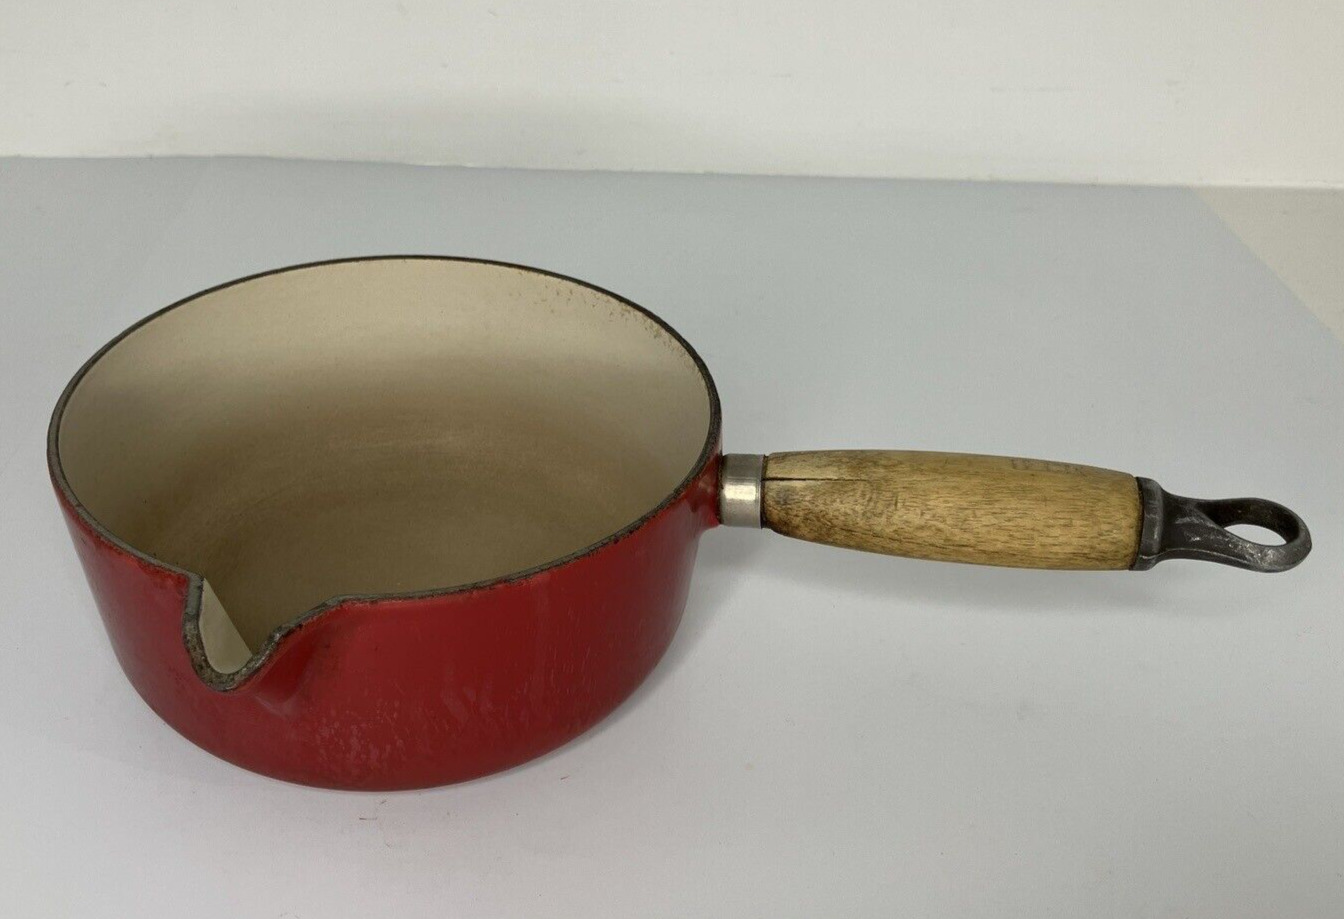 Vintage Le Creuset #18 Red Cast Iron Enameled Sauce Pan w/Pouring Spout